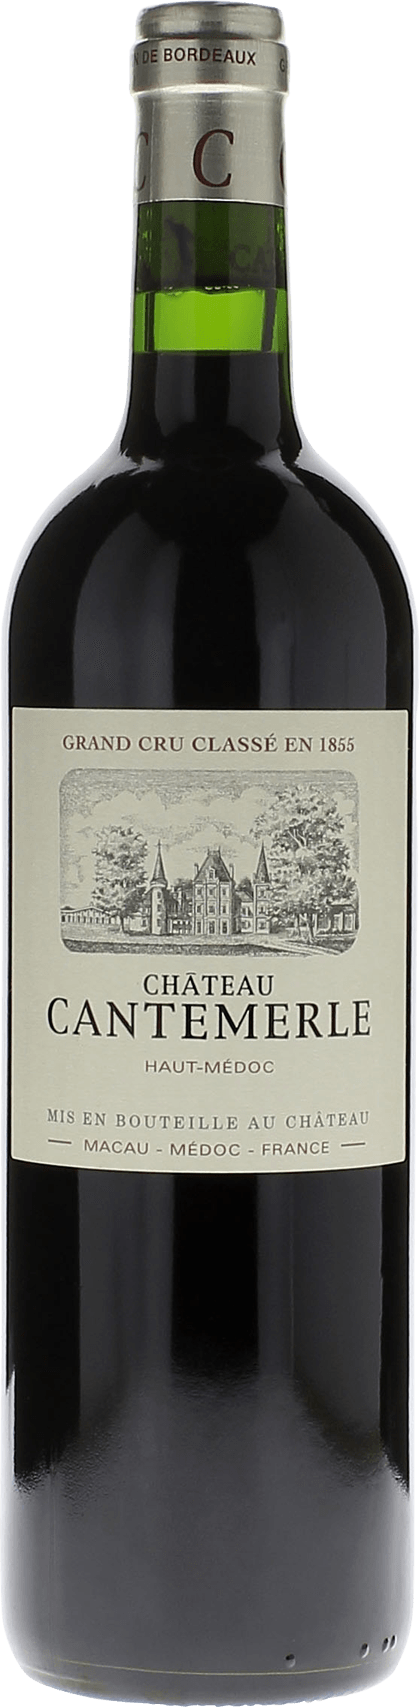 Cantemerle 1998 5me Grand cru class Haut-Mdoc, Bordeaux rouge